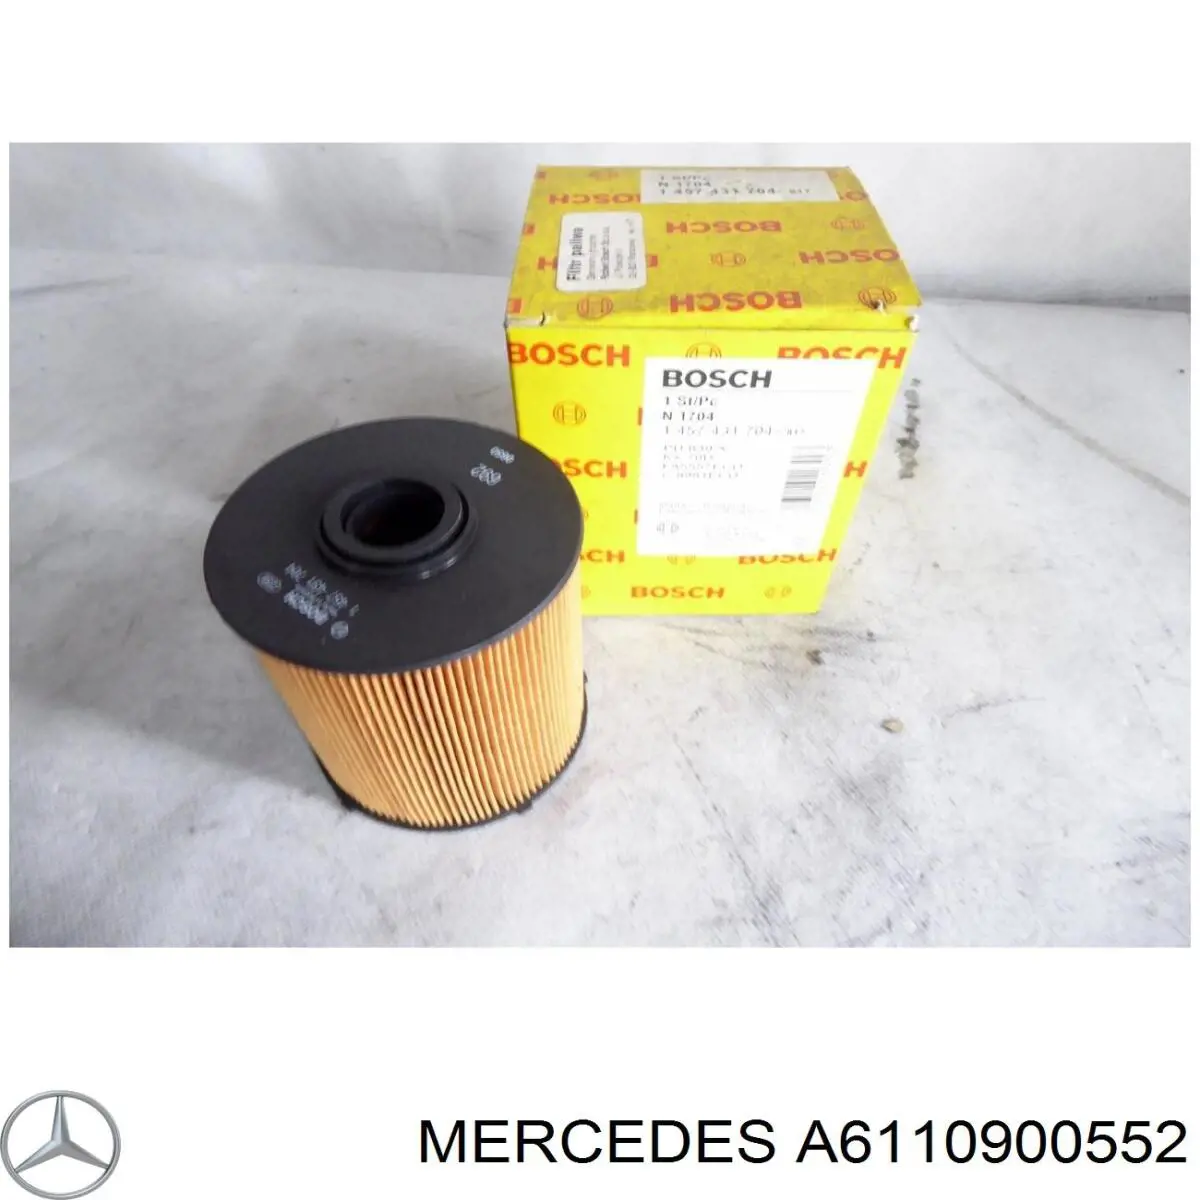 A6110900552 Mercedes filtro combustible